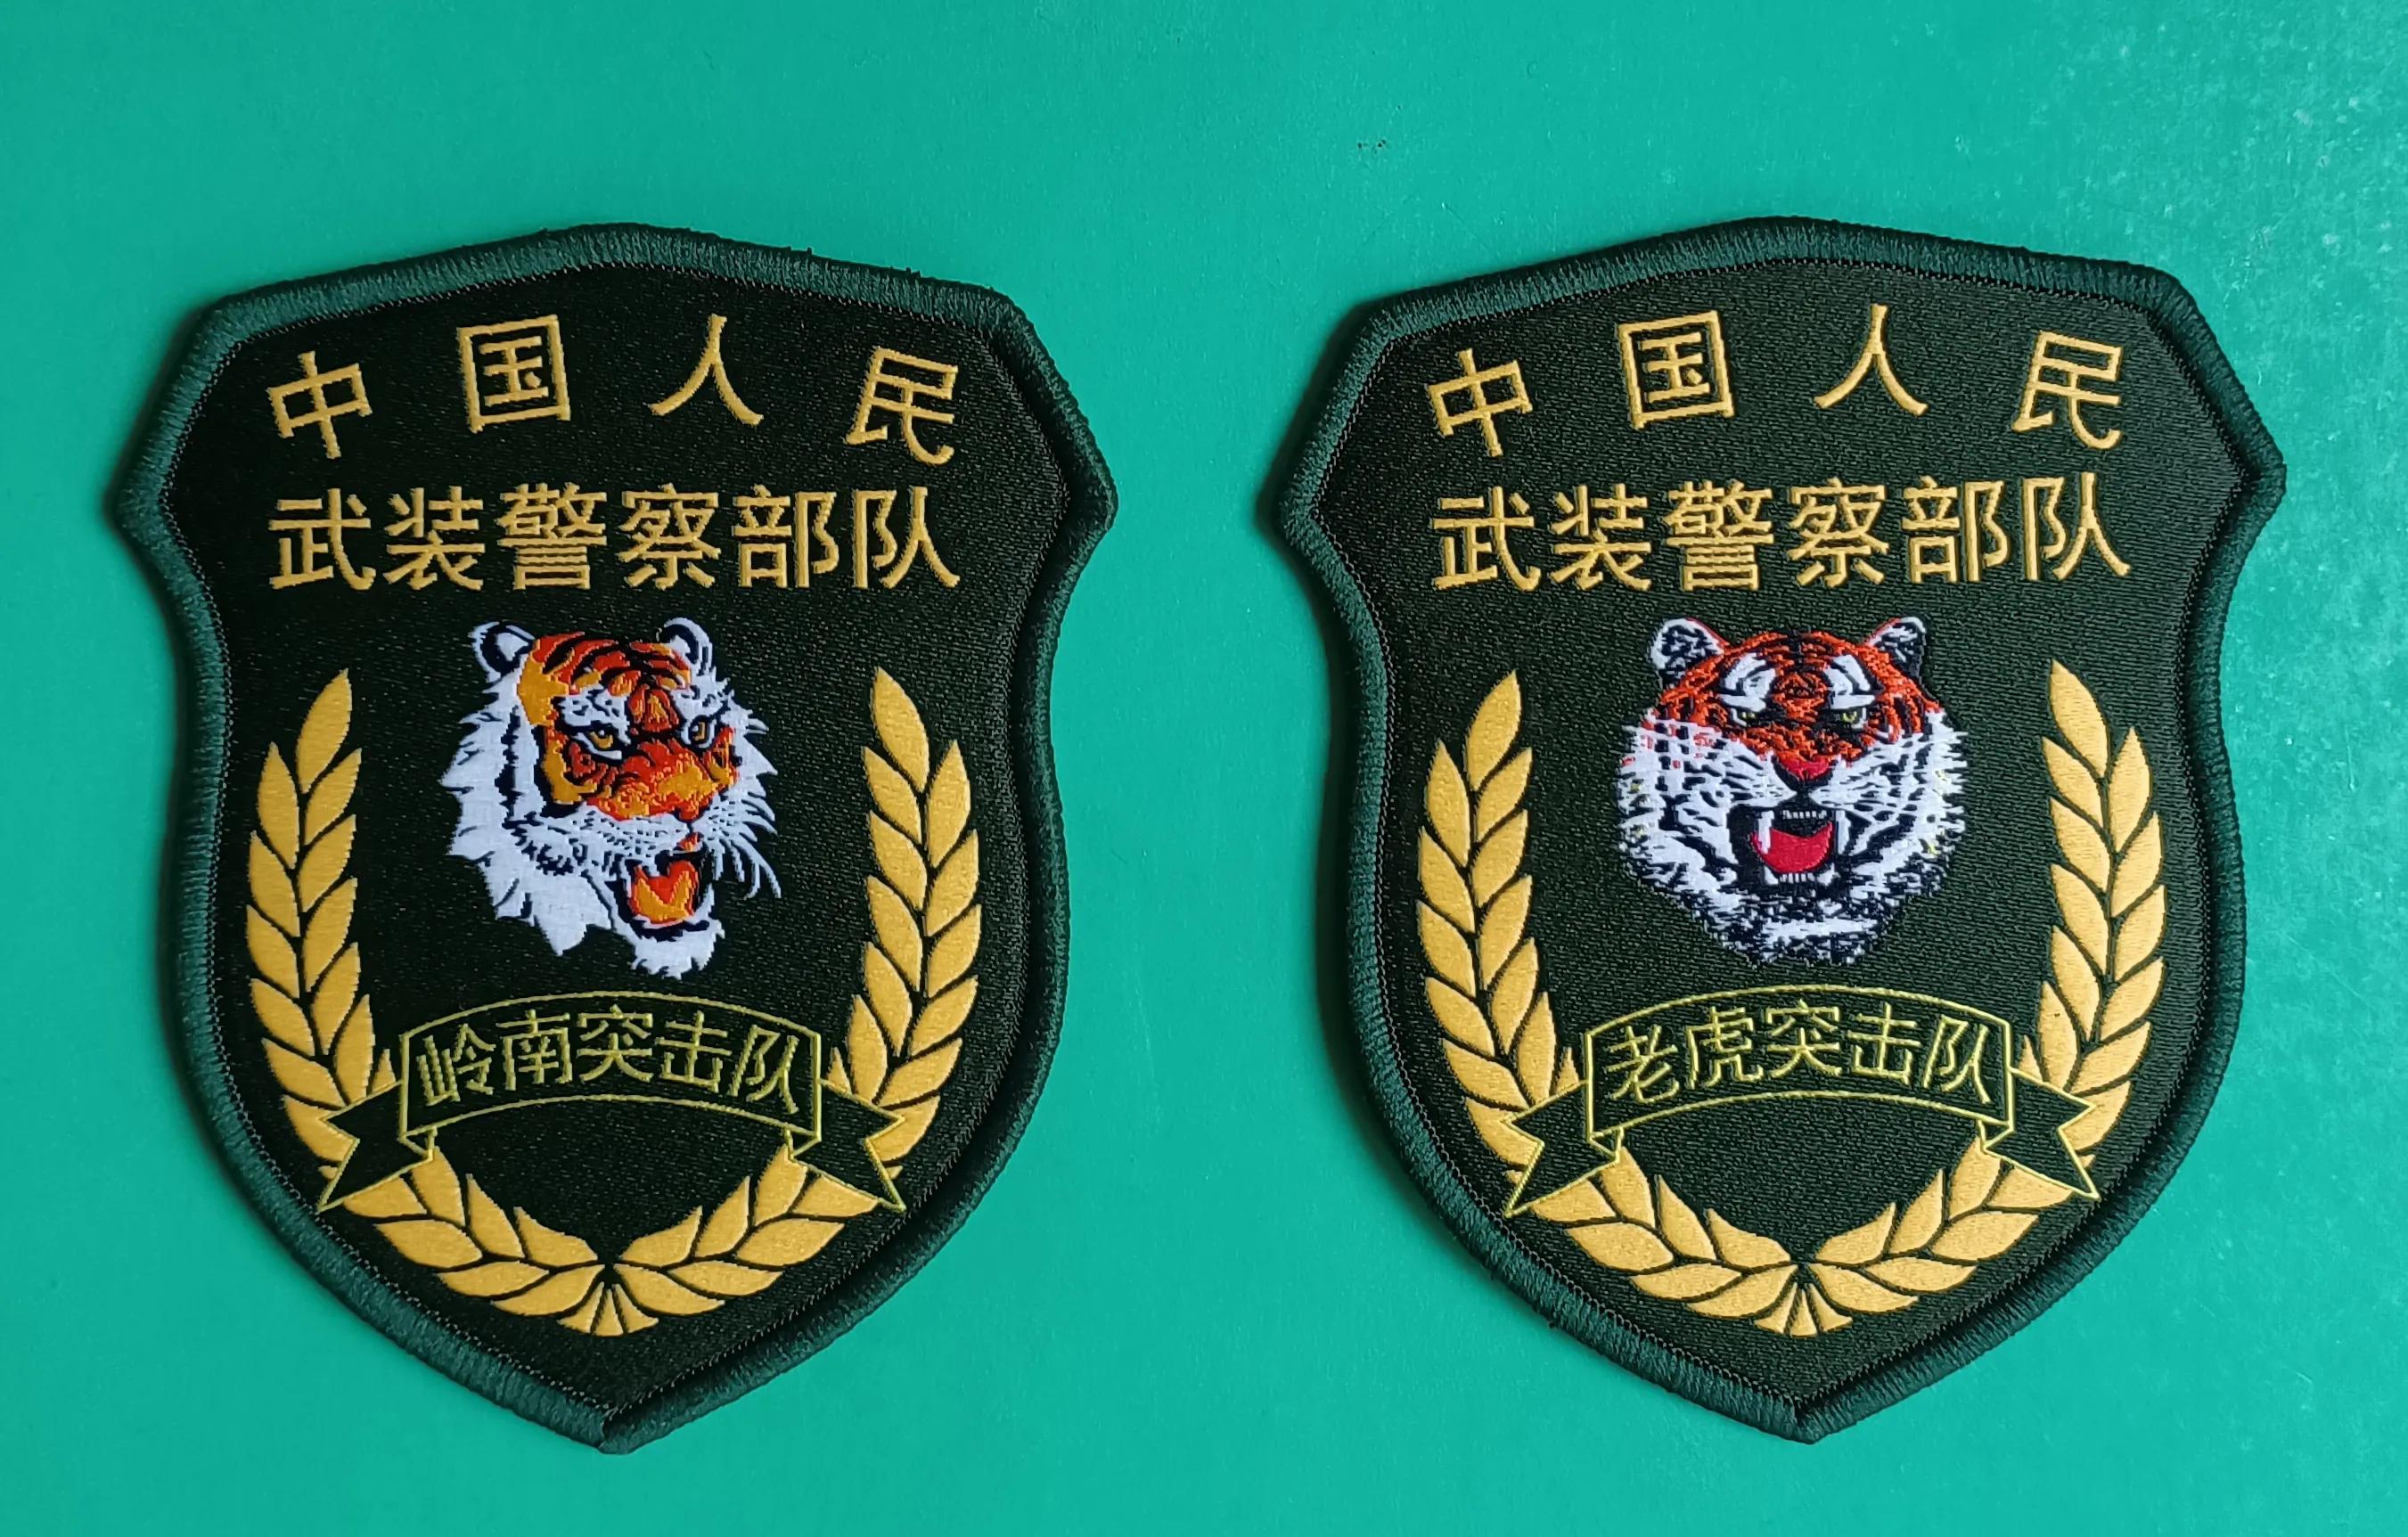 毛启国:武警部队16式臂章鉴赏